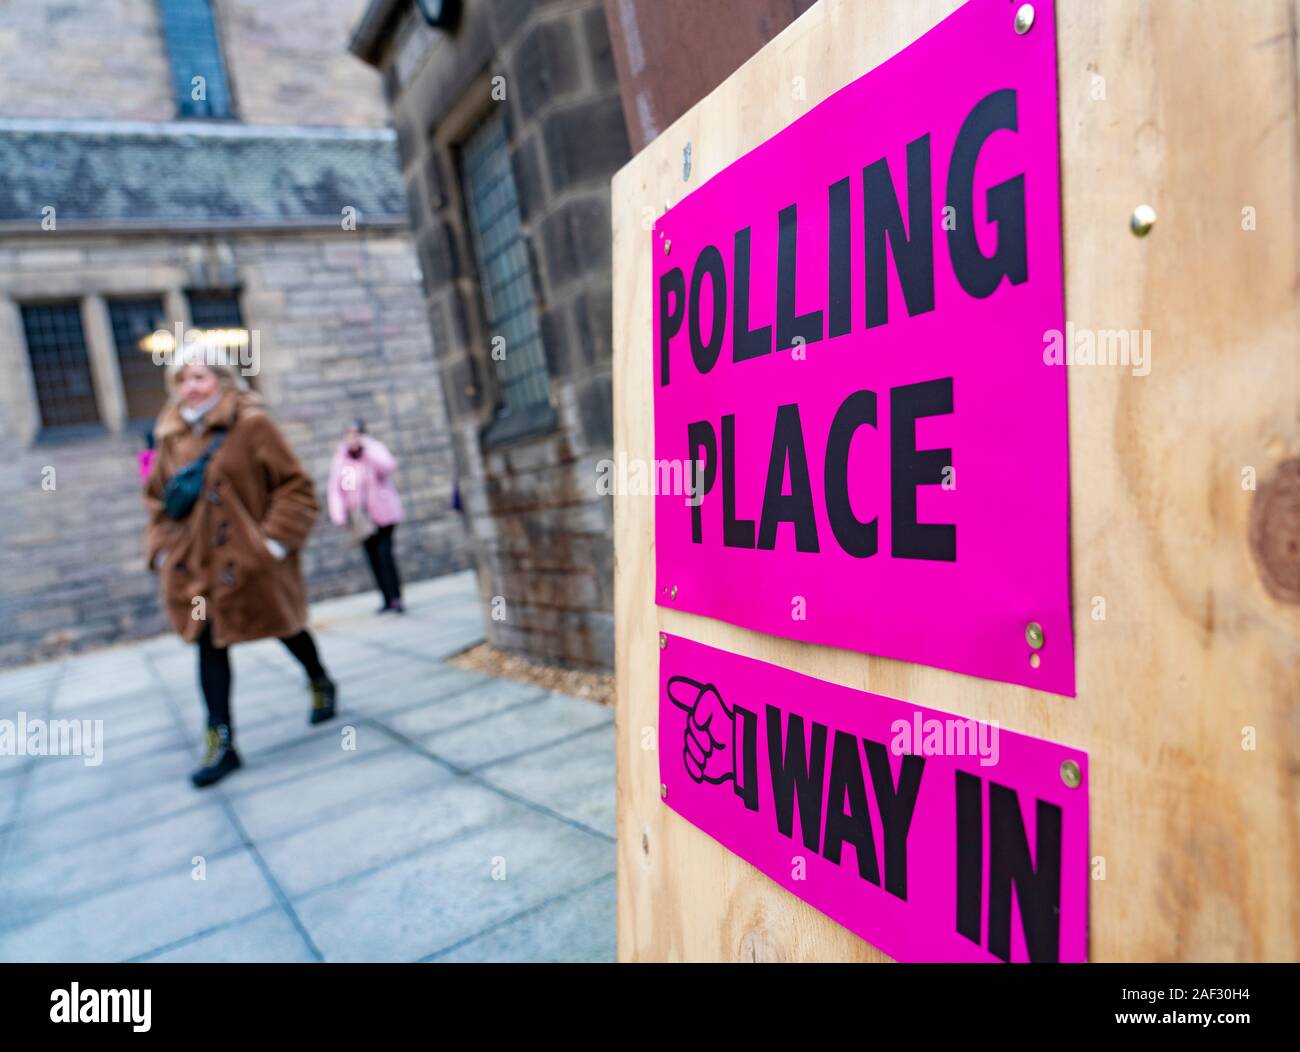 Zeichen außerhalb Wahllokal in Edinburgh, Schottland während der allgemeinen Wahlen am Wahltag am 12 Dez 2019, Großbritannien Stockfoto